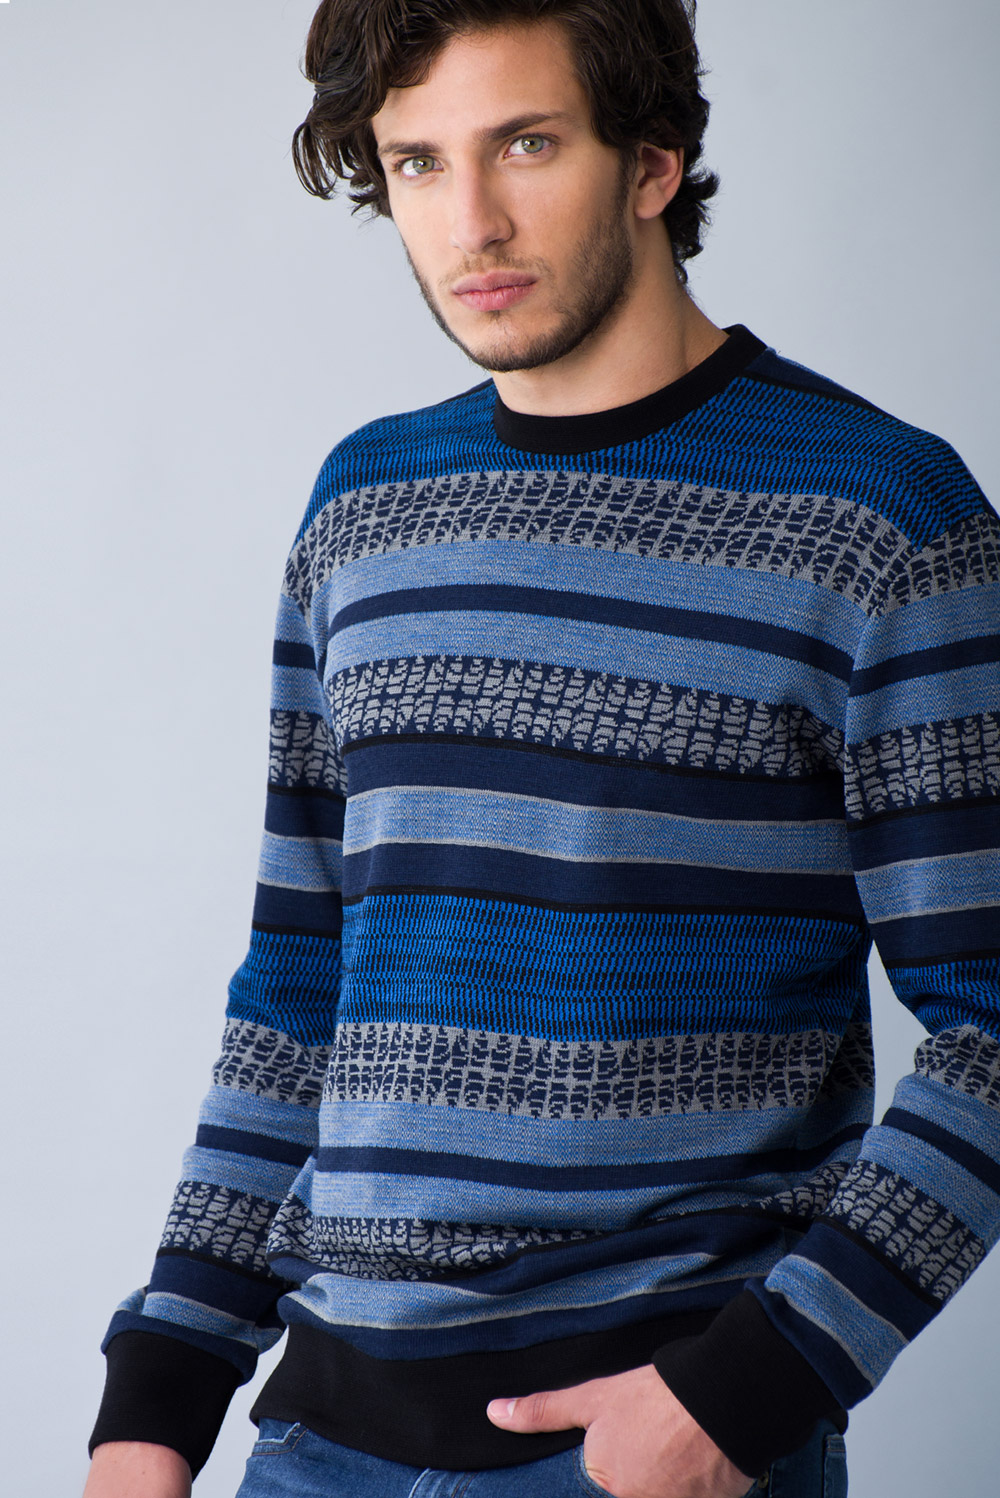 Sweater Merino Ecosistema para Hombre - Koshkil